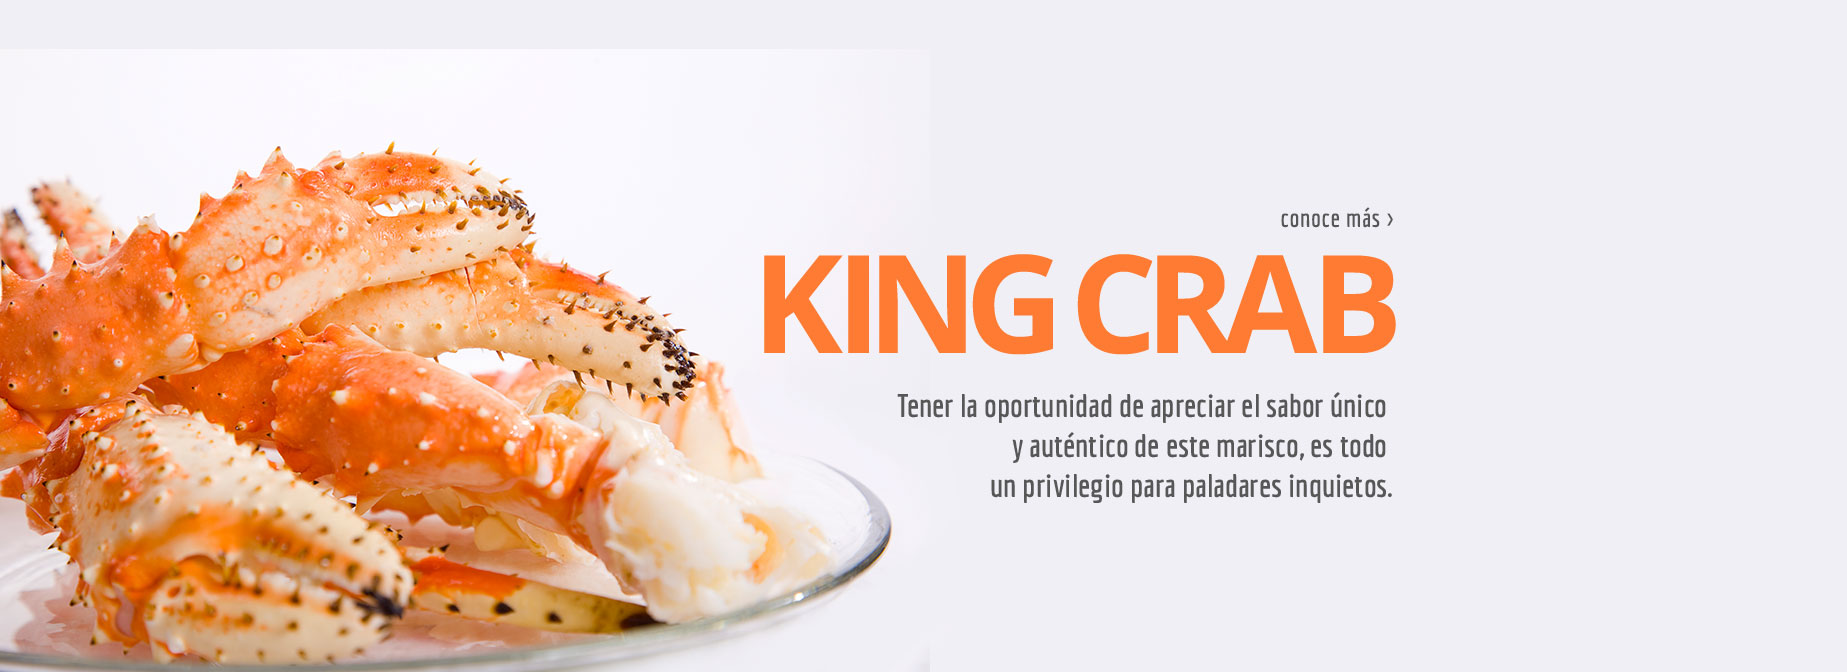 KING CRAB - Tener la oportunidad de apreciar el sabor único y auténtico de este marisco, es todo un privilegio para paladares inquietos